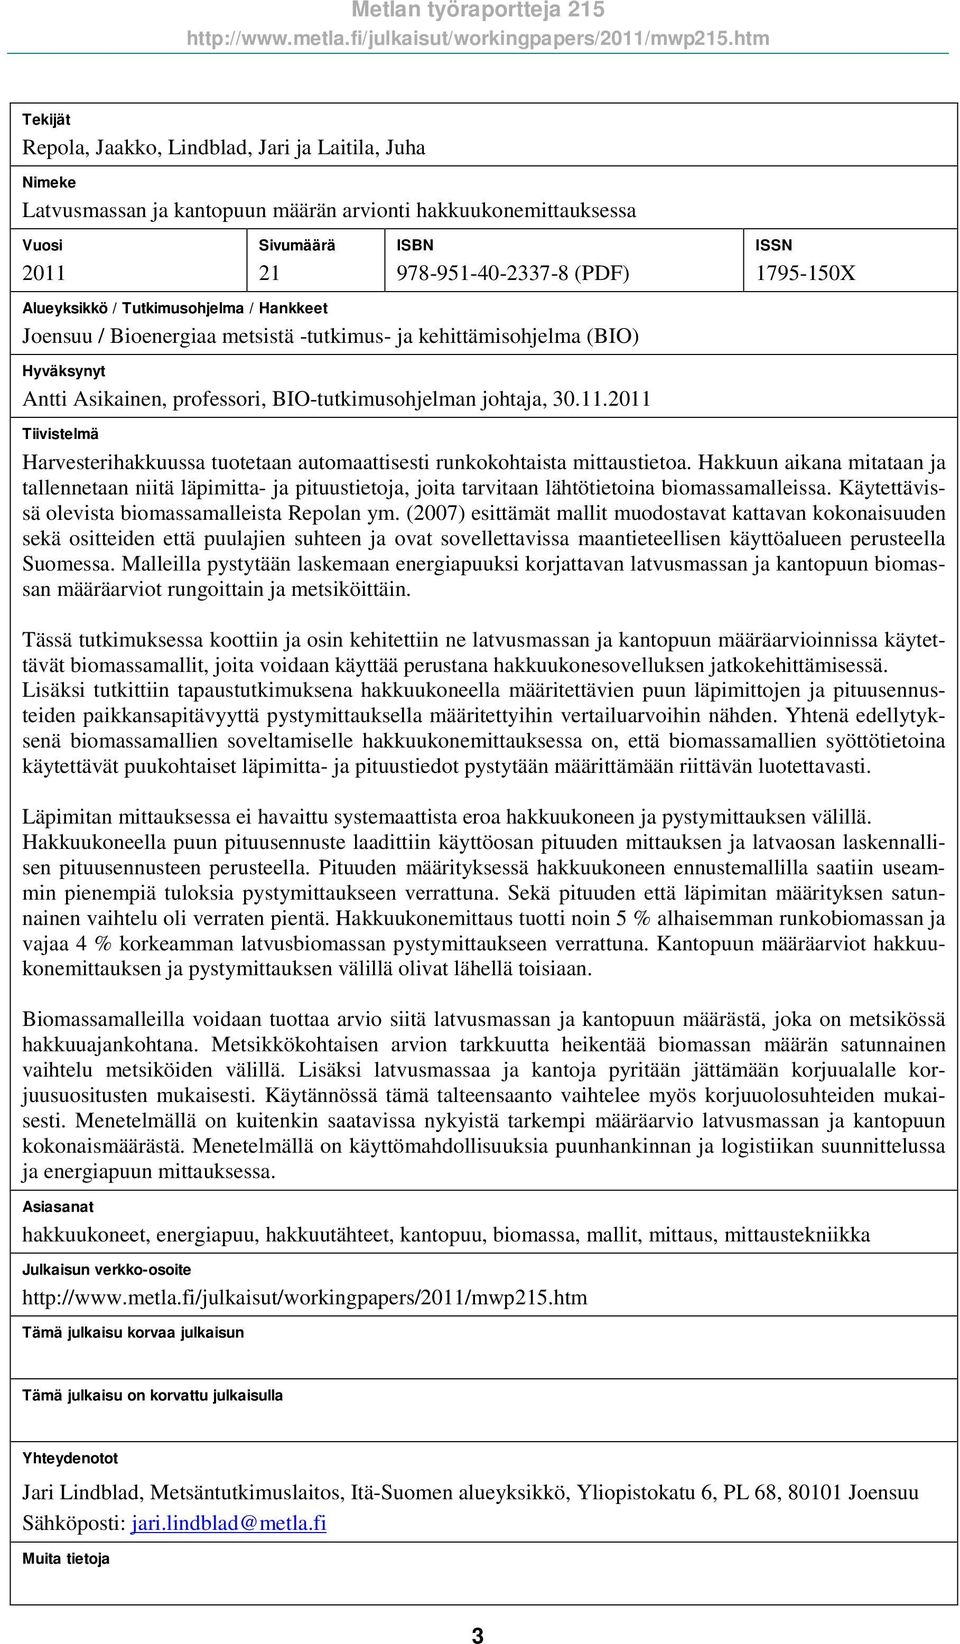 Tutmusohjelma / Hankkeet Joensuu / Bioenergiaa metsistä -tutmus- ja kehittämisohjelma (BIO Hyväksynyt Antti Asikainen, professori, BIO-tutmusohjelman johtaja, 30.11.